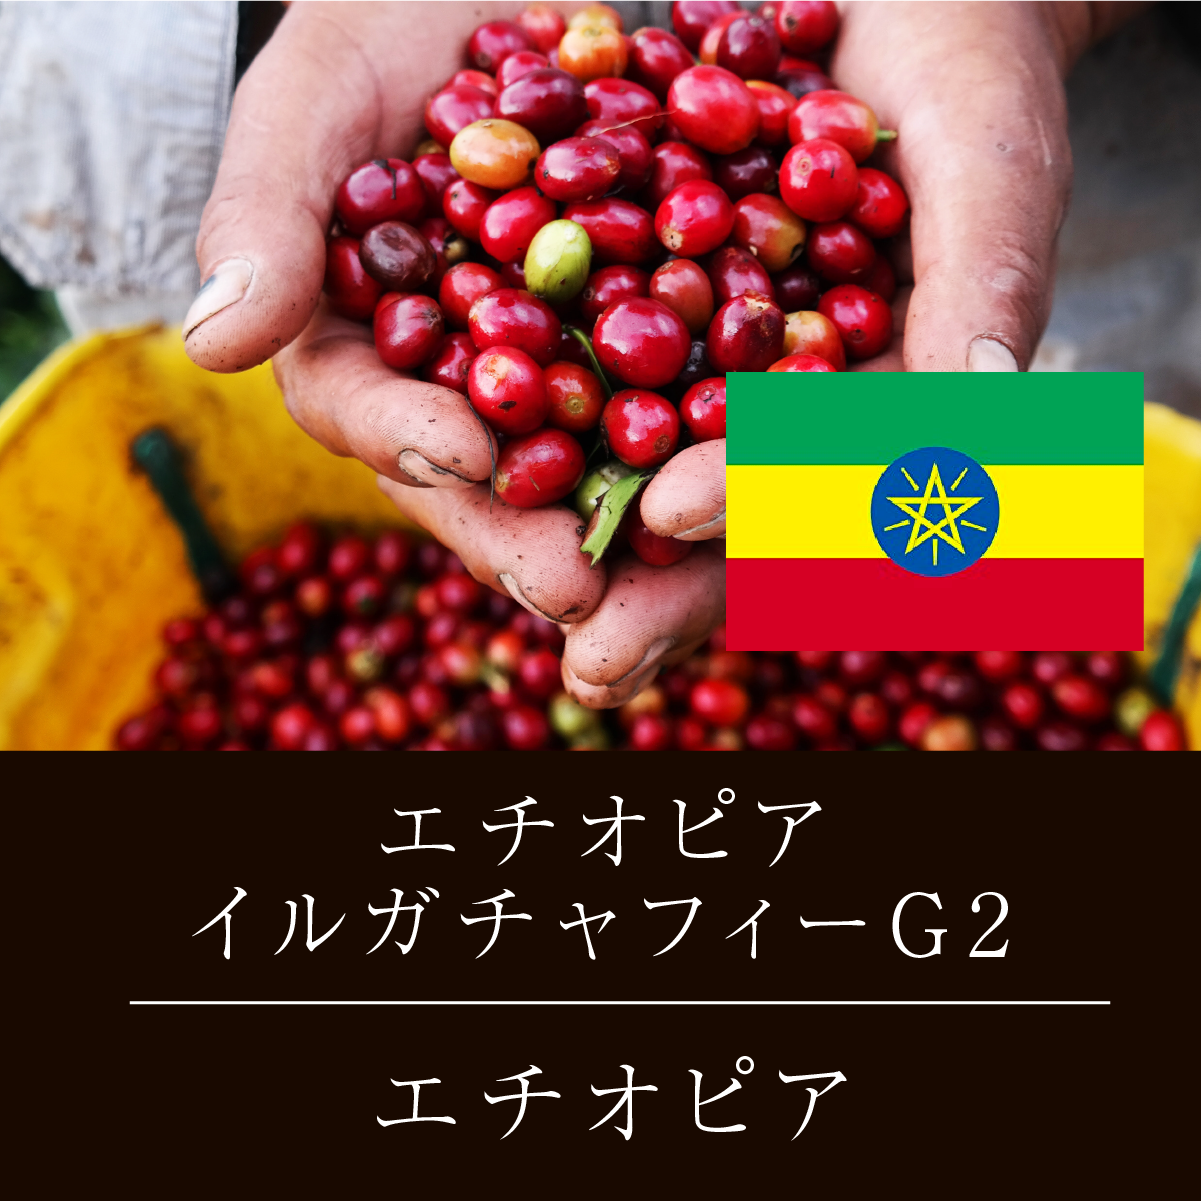 エチオピア イルガチャフィ G2 ニシナ屋 珈琲 焙煎 コーヒー 豆 500g